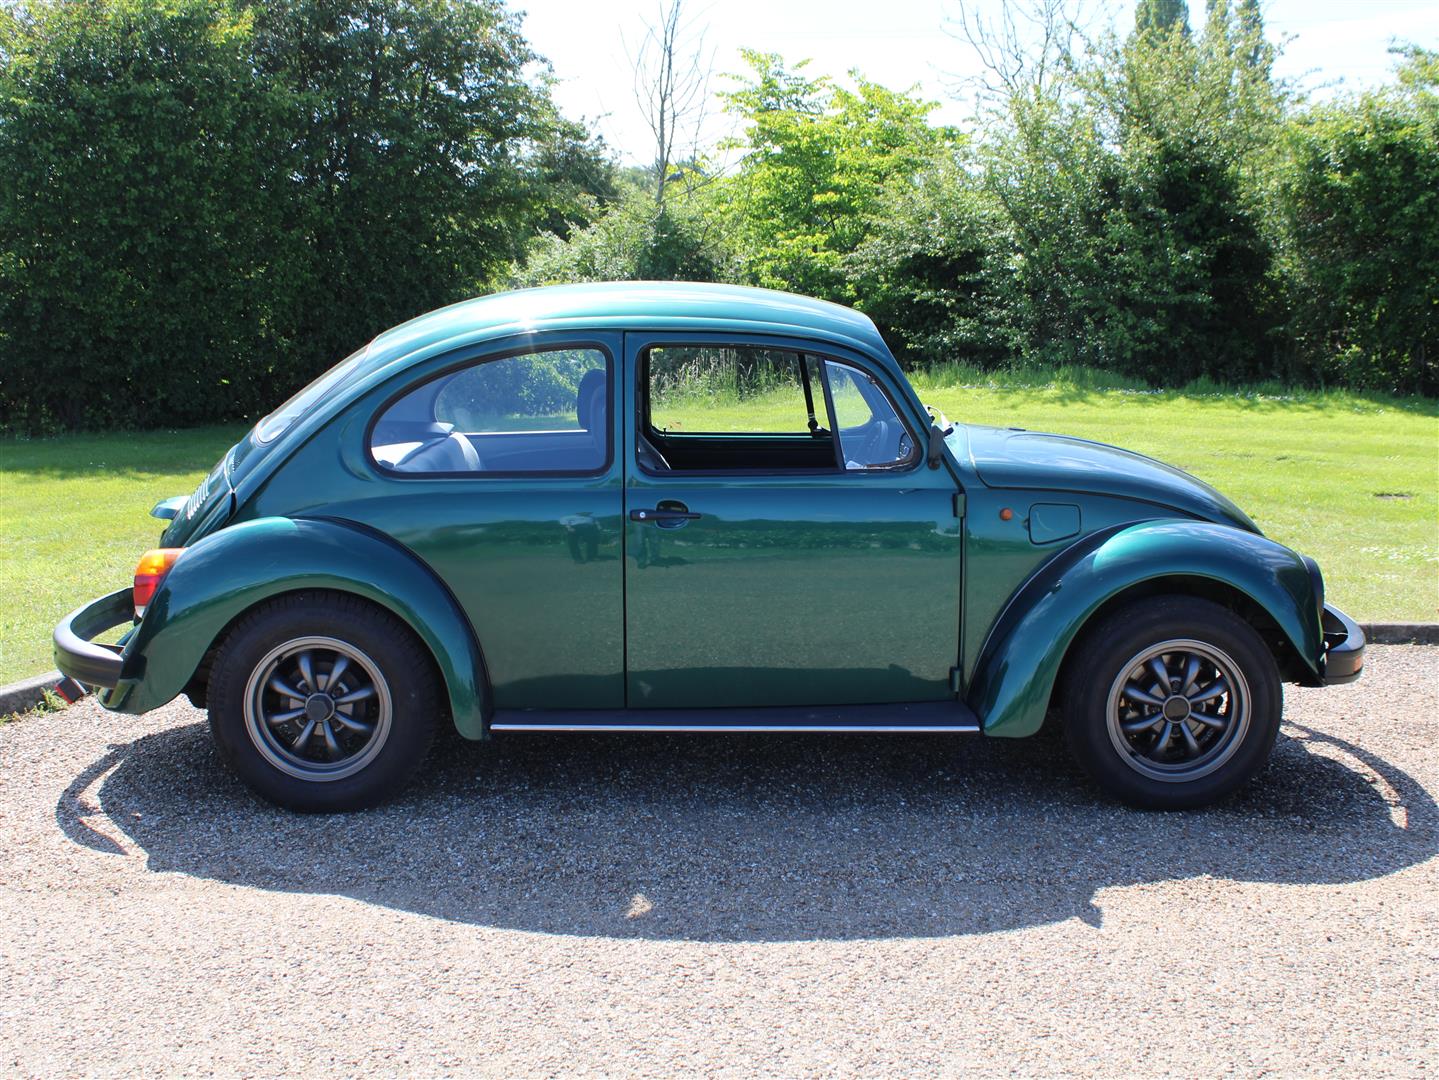 1997 VW Beetle 1600 - Image 8 of 18